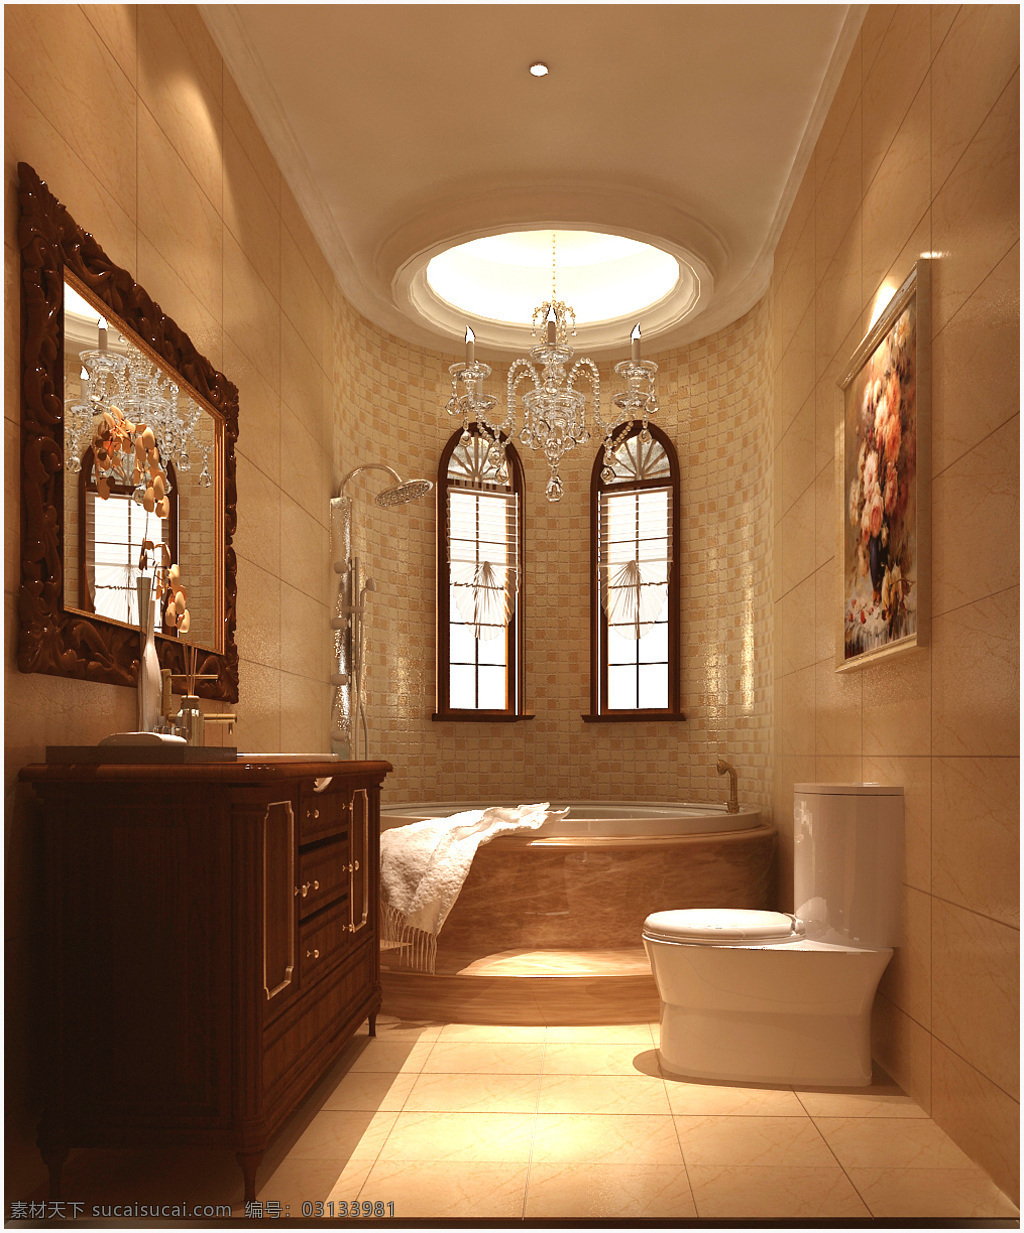 室内设计 欧式 效果图 环境设计 主卫生间 坐便 资料 家居装饰素材